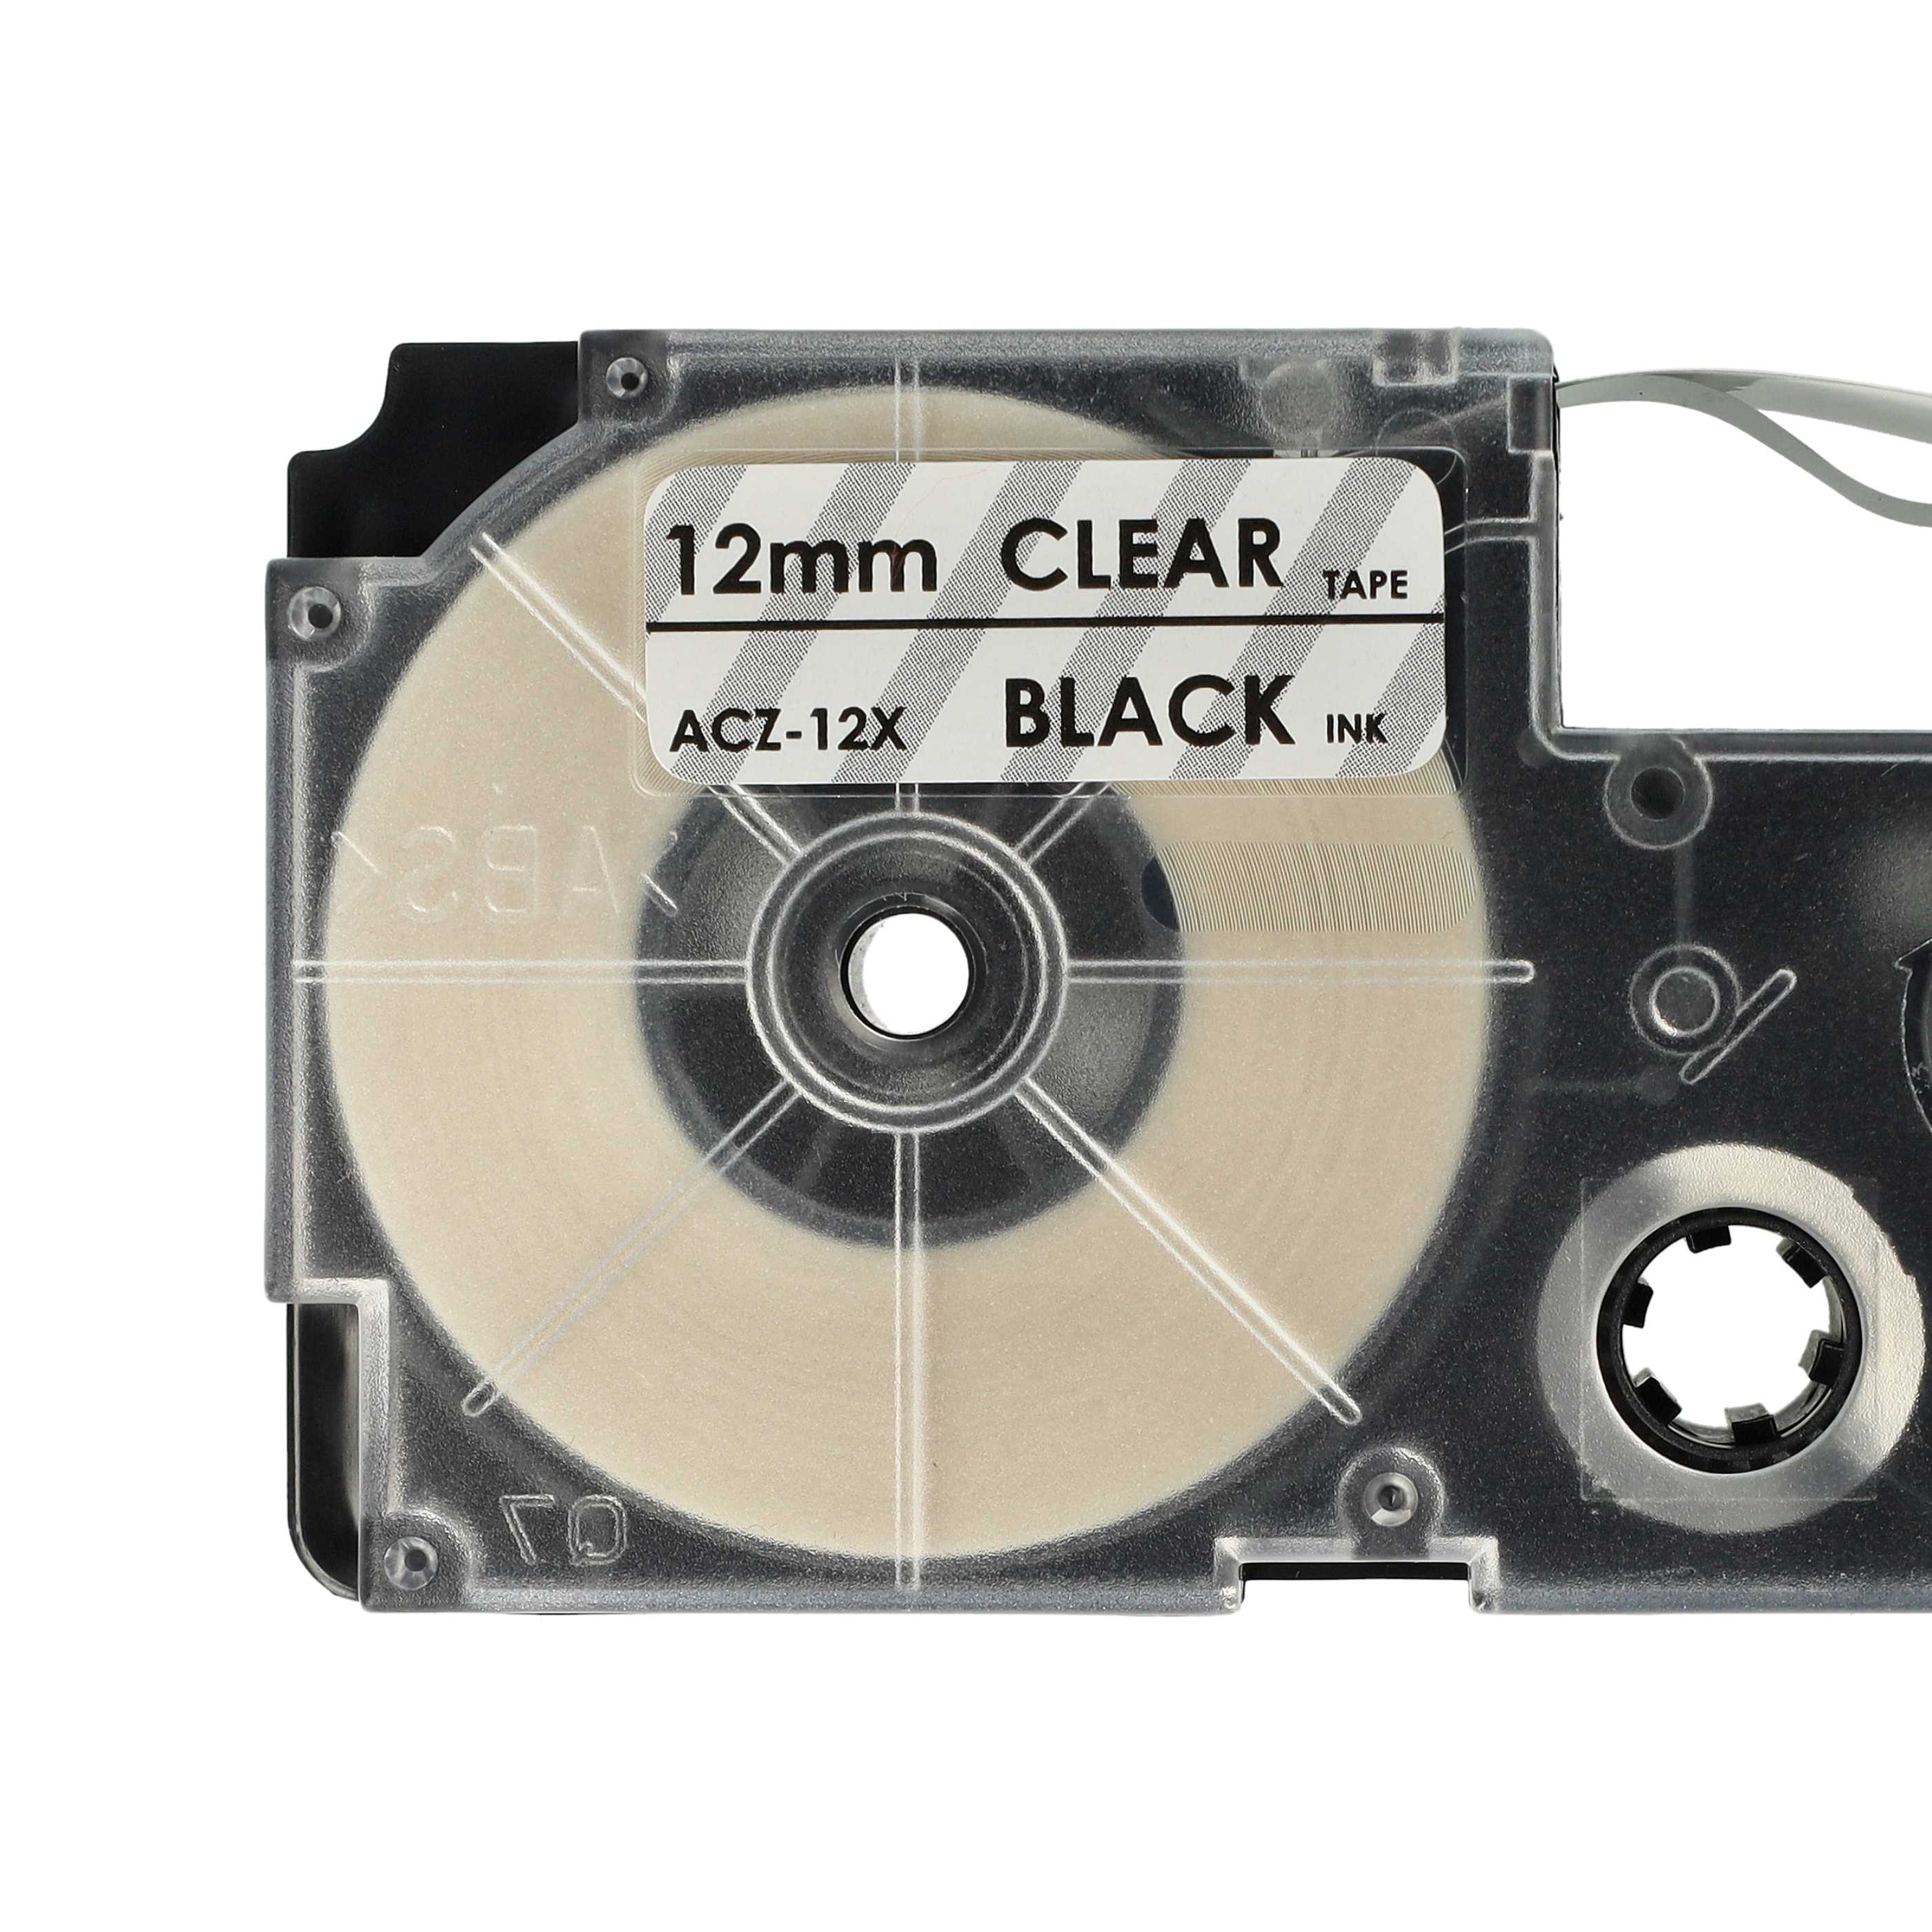 Casete cinta escritura reemplaza Casio XR-12X1, XR-12X Negro su Transparente